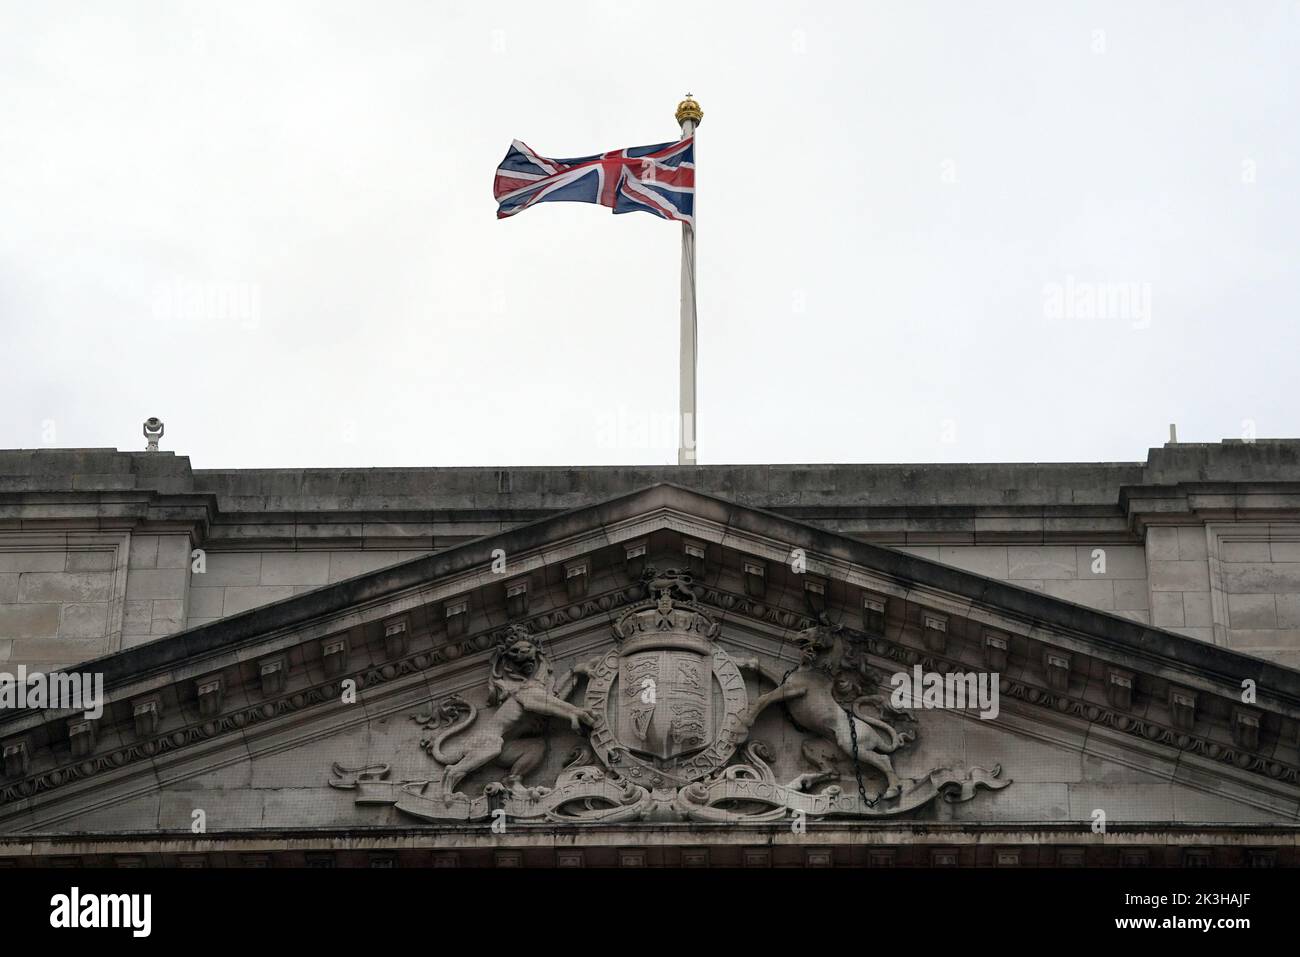 La bandiera dell'Unione su Buckingham Palace, Londra, viene restituita all'albero pieno come il periodo di lutto dopo la morte della regina Elisabetta II giunge alla fine. Le bandiere nelle residenze reali erano rimaste a metà albero da quando la regina morì il 8 settembre. Data immagine: Martedì 27 settembre 2022. Foto Stock